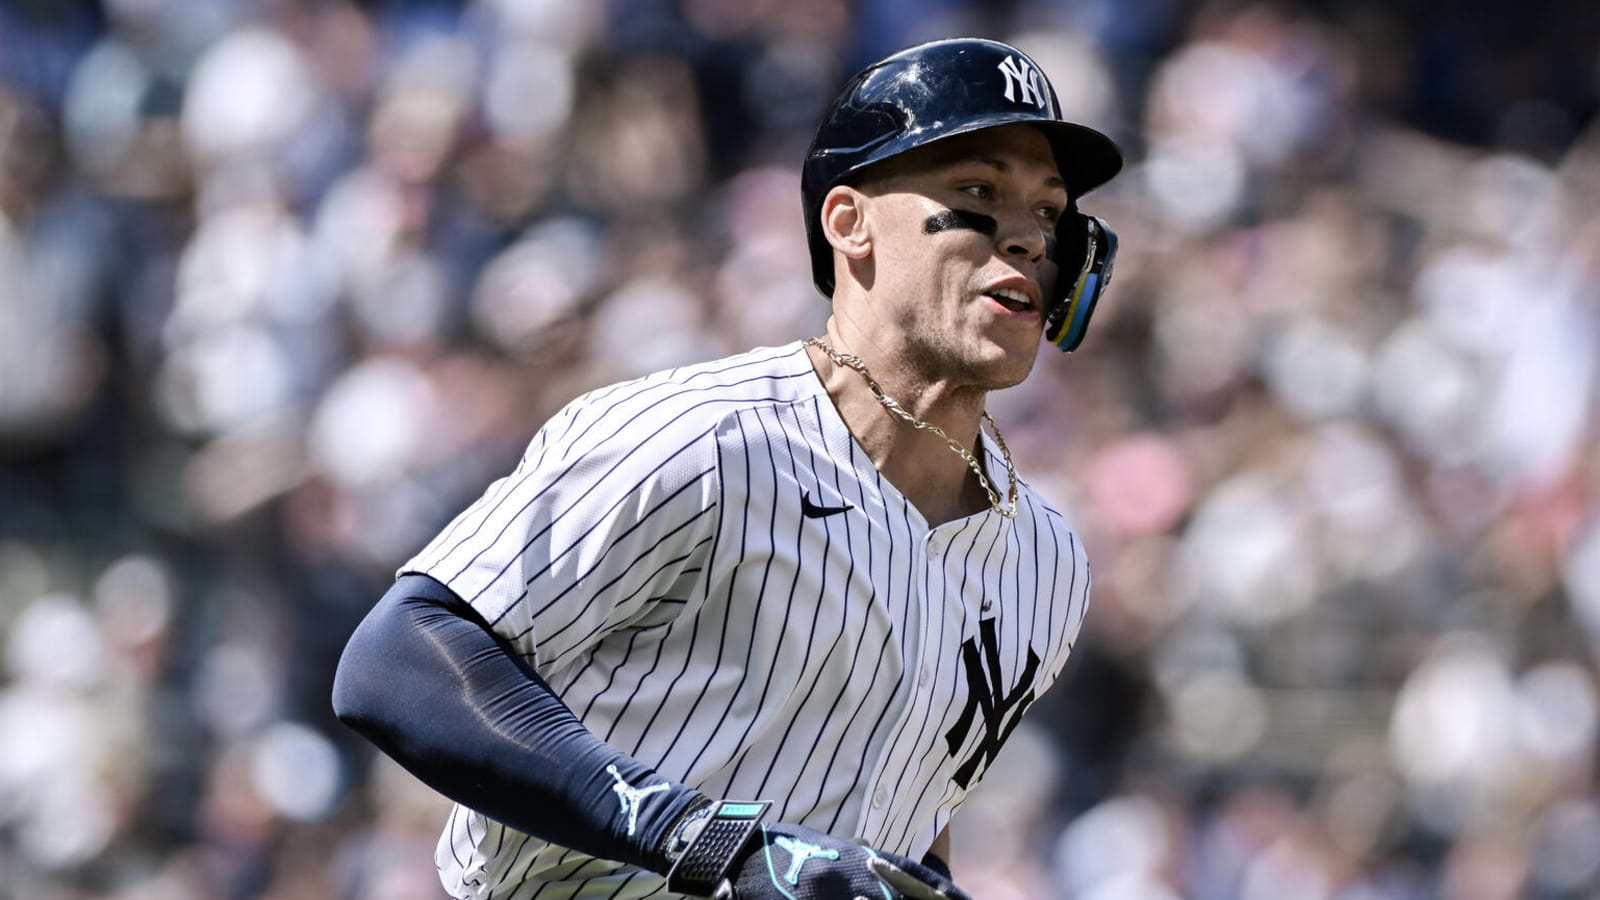 Watch: Yankees' Aaron Judge blasts 13th HR in win